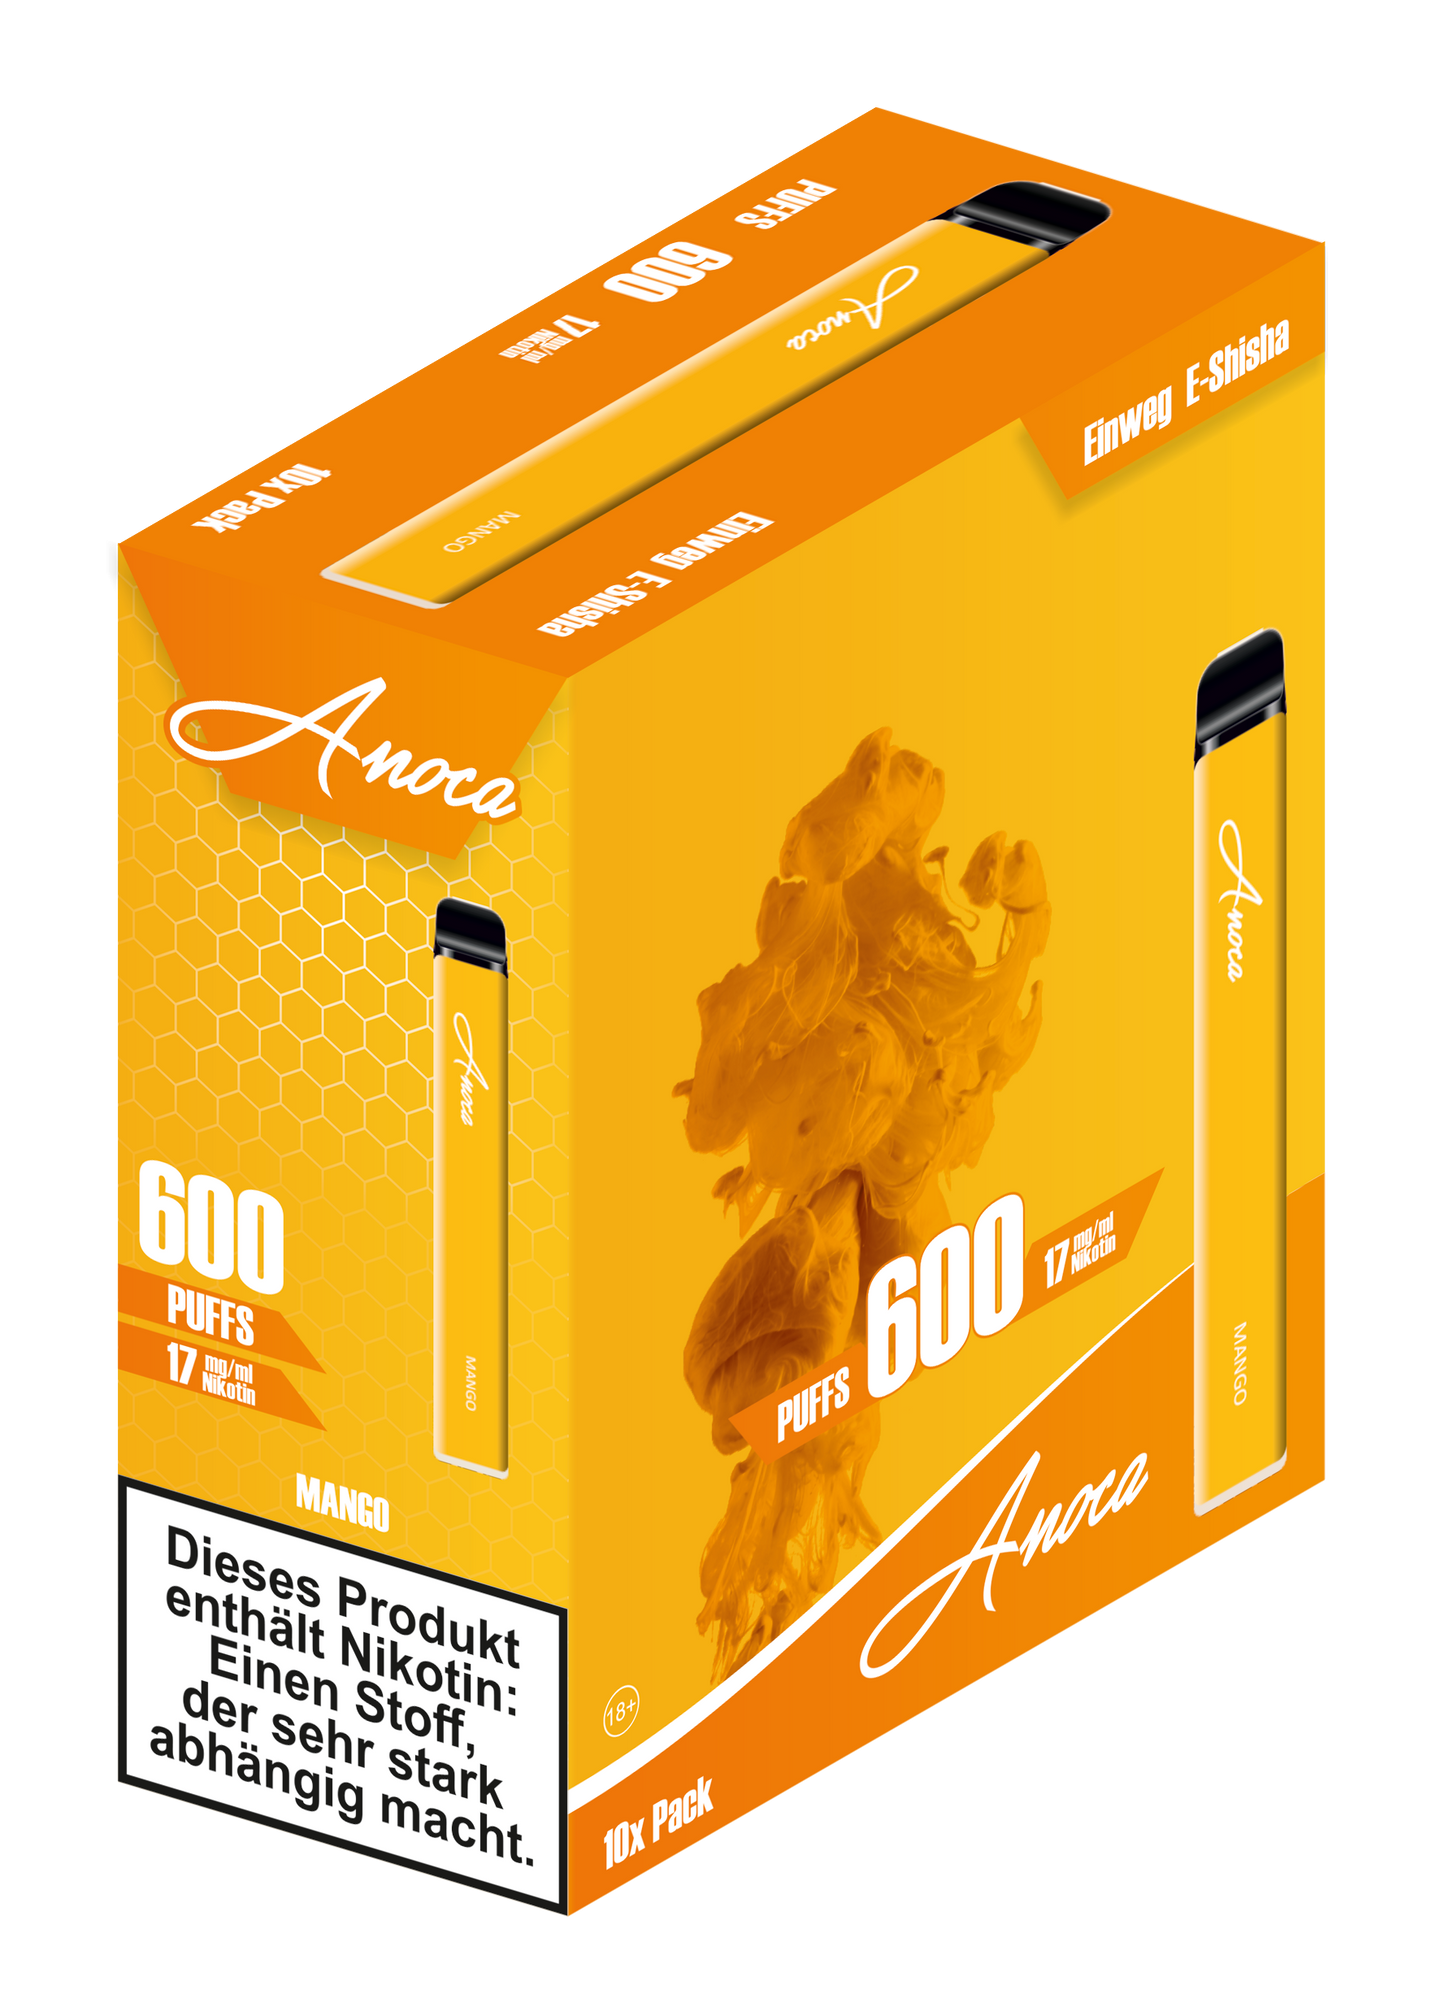 Anoca - Einweg E-Shisha 600 Puffs - Mango - 10er Pack